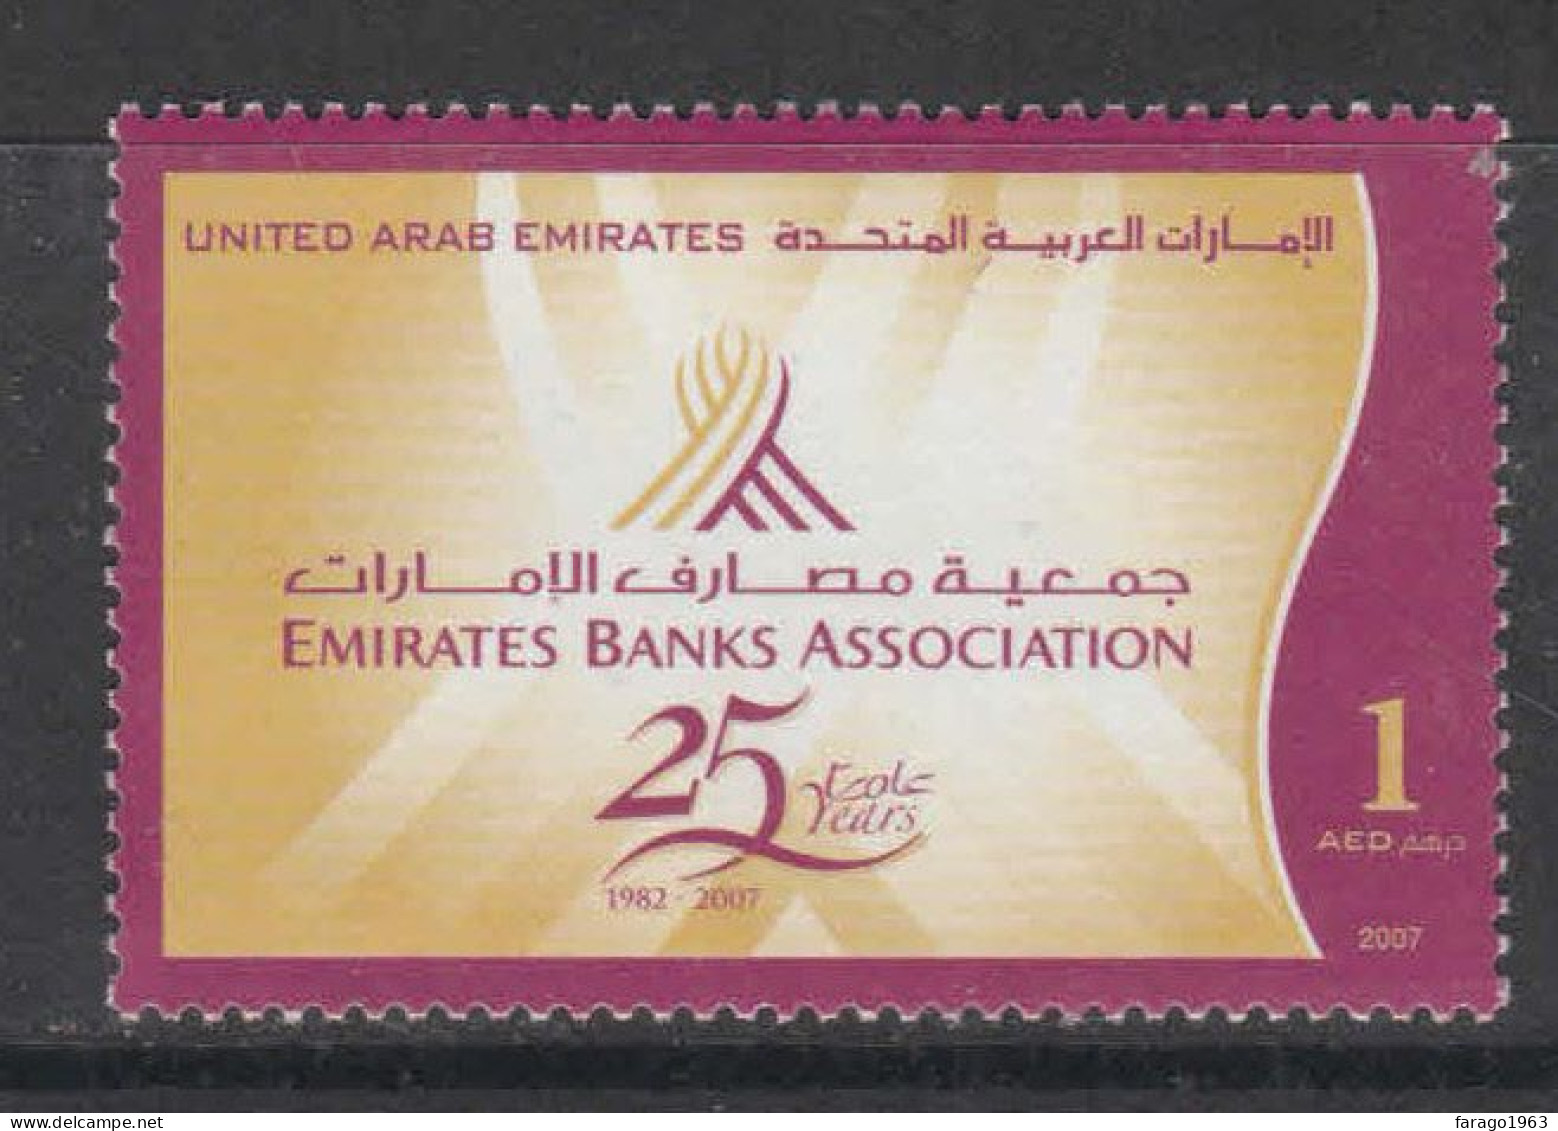 2007 United Arab Emirates Banks Association Finance Complete Set Of 1 MNH - Ver. Arab. Emirate